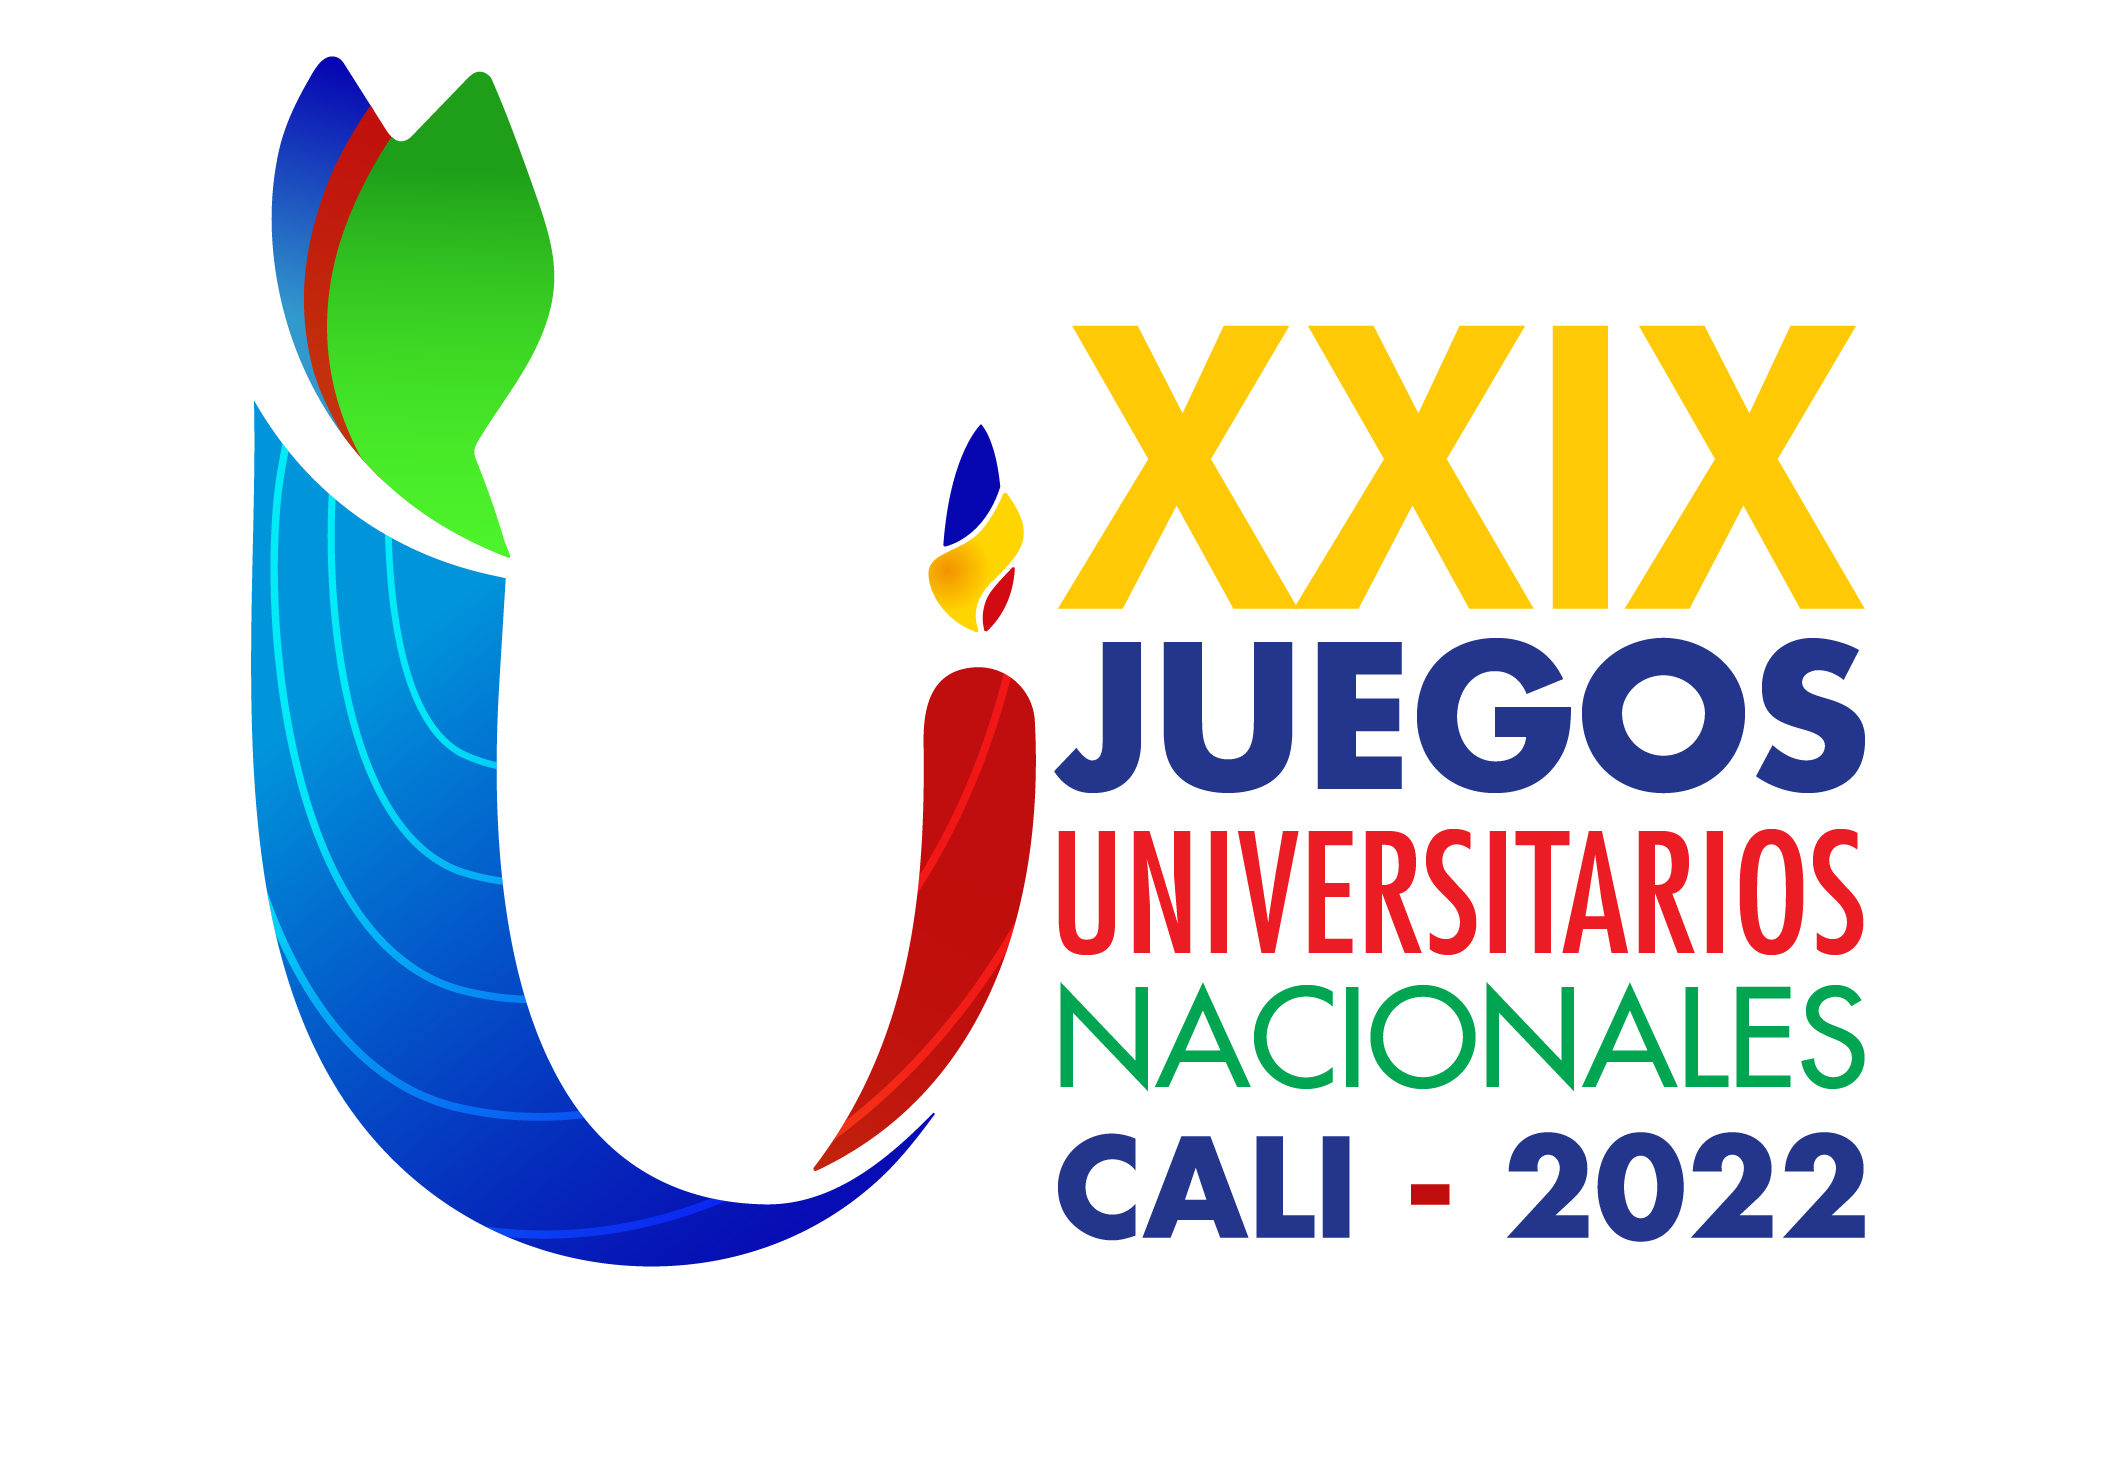 XXIX Juegos Universitarios Nacionales Ascun 2022